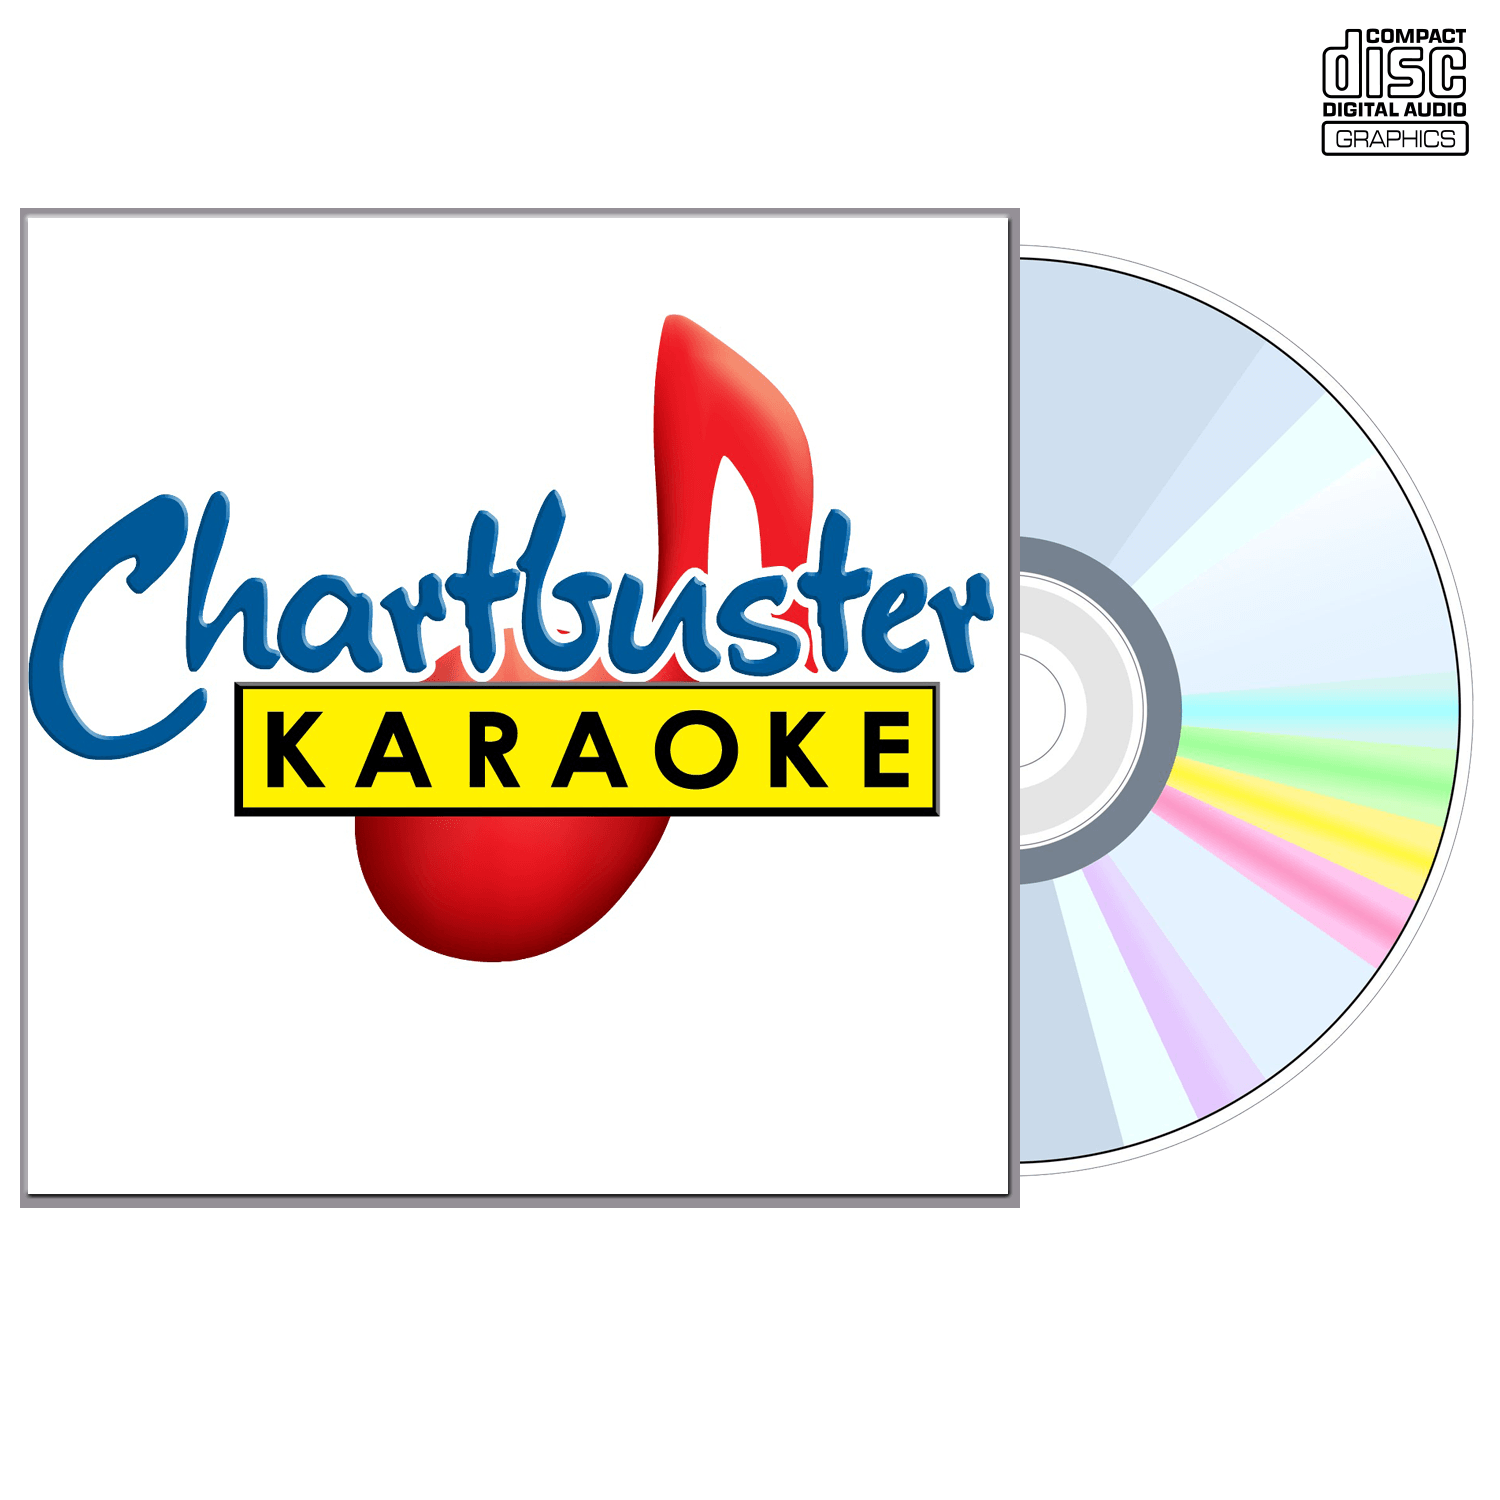 Del Mccoury - CD+G - Chartbuster Karaoke - Karaoke Home Entertainment